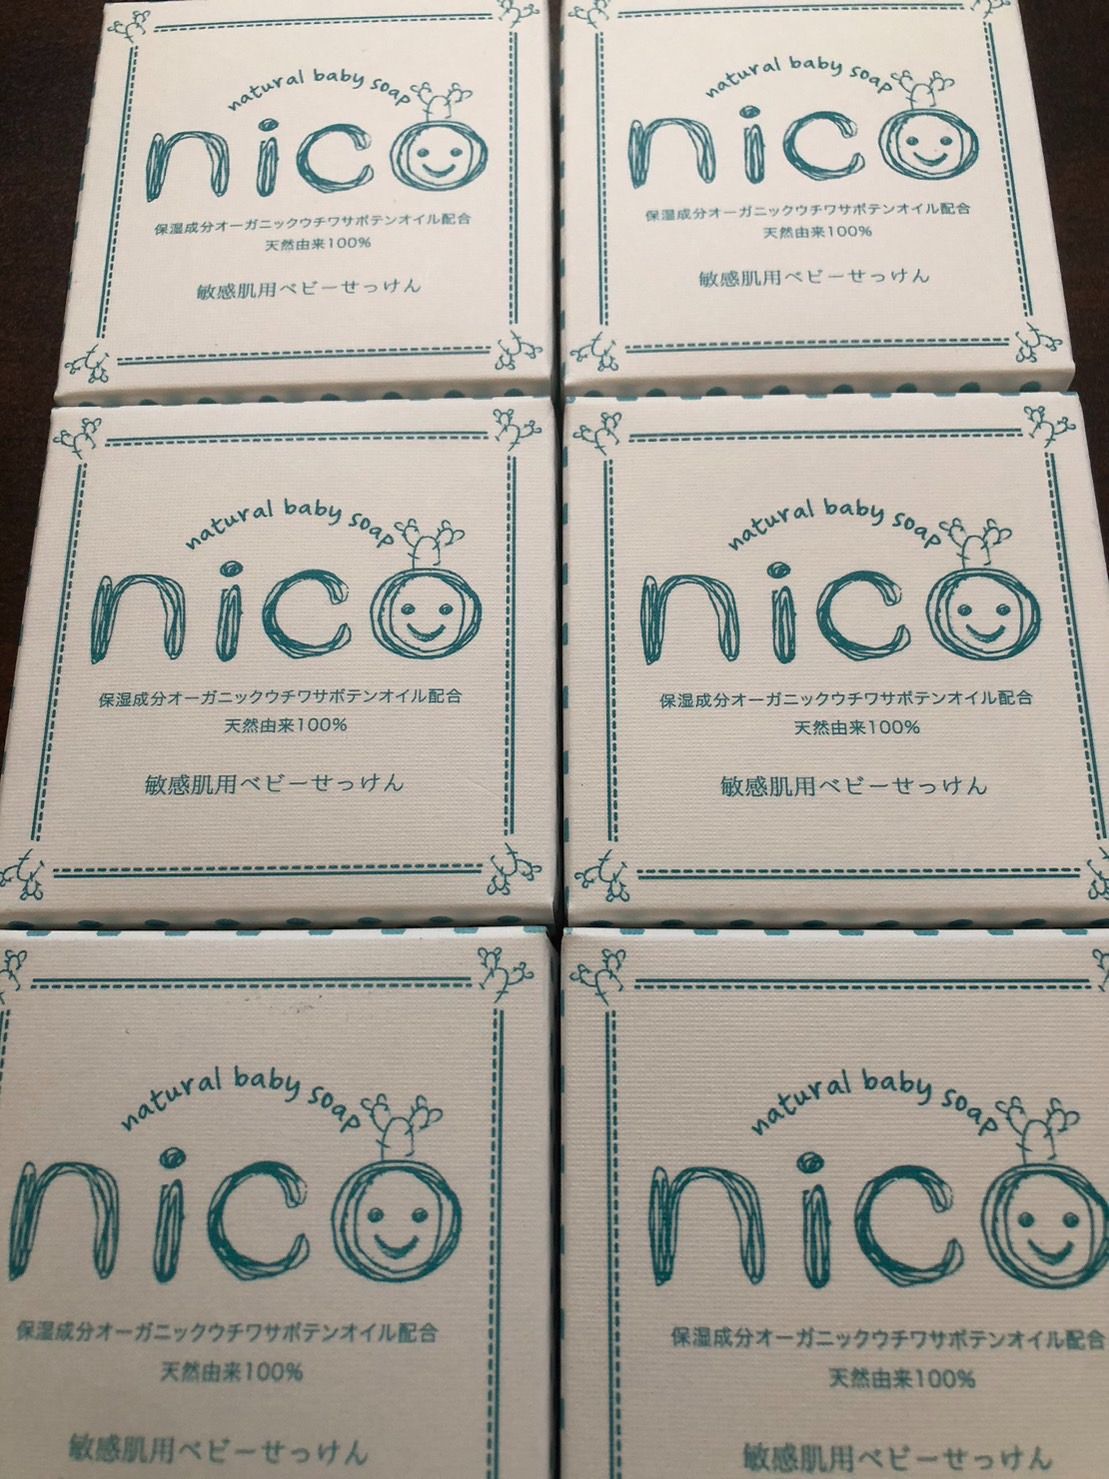 nico石鹸 6個まとめ売り にこせっけん 天然由来100% オーガニック - 洗顔料